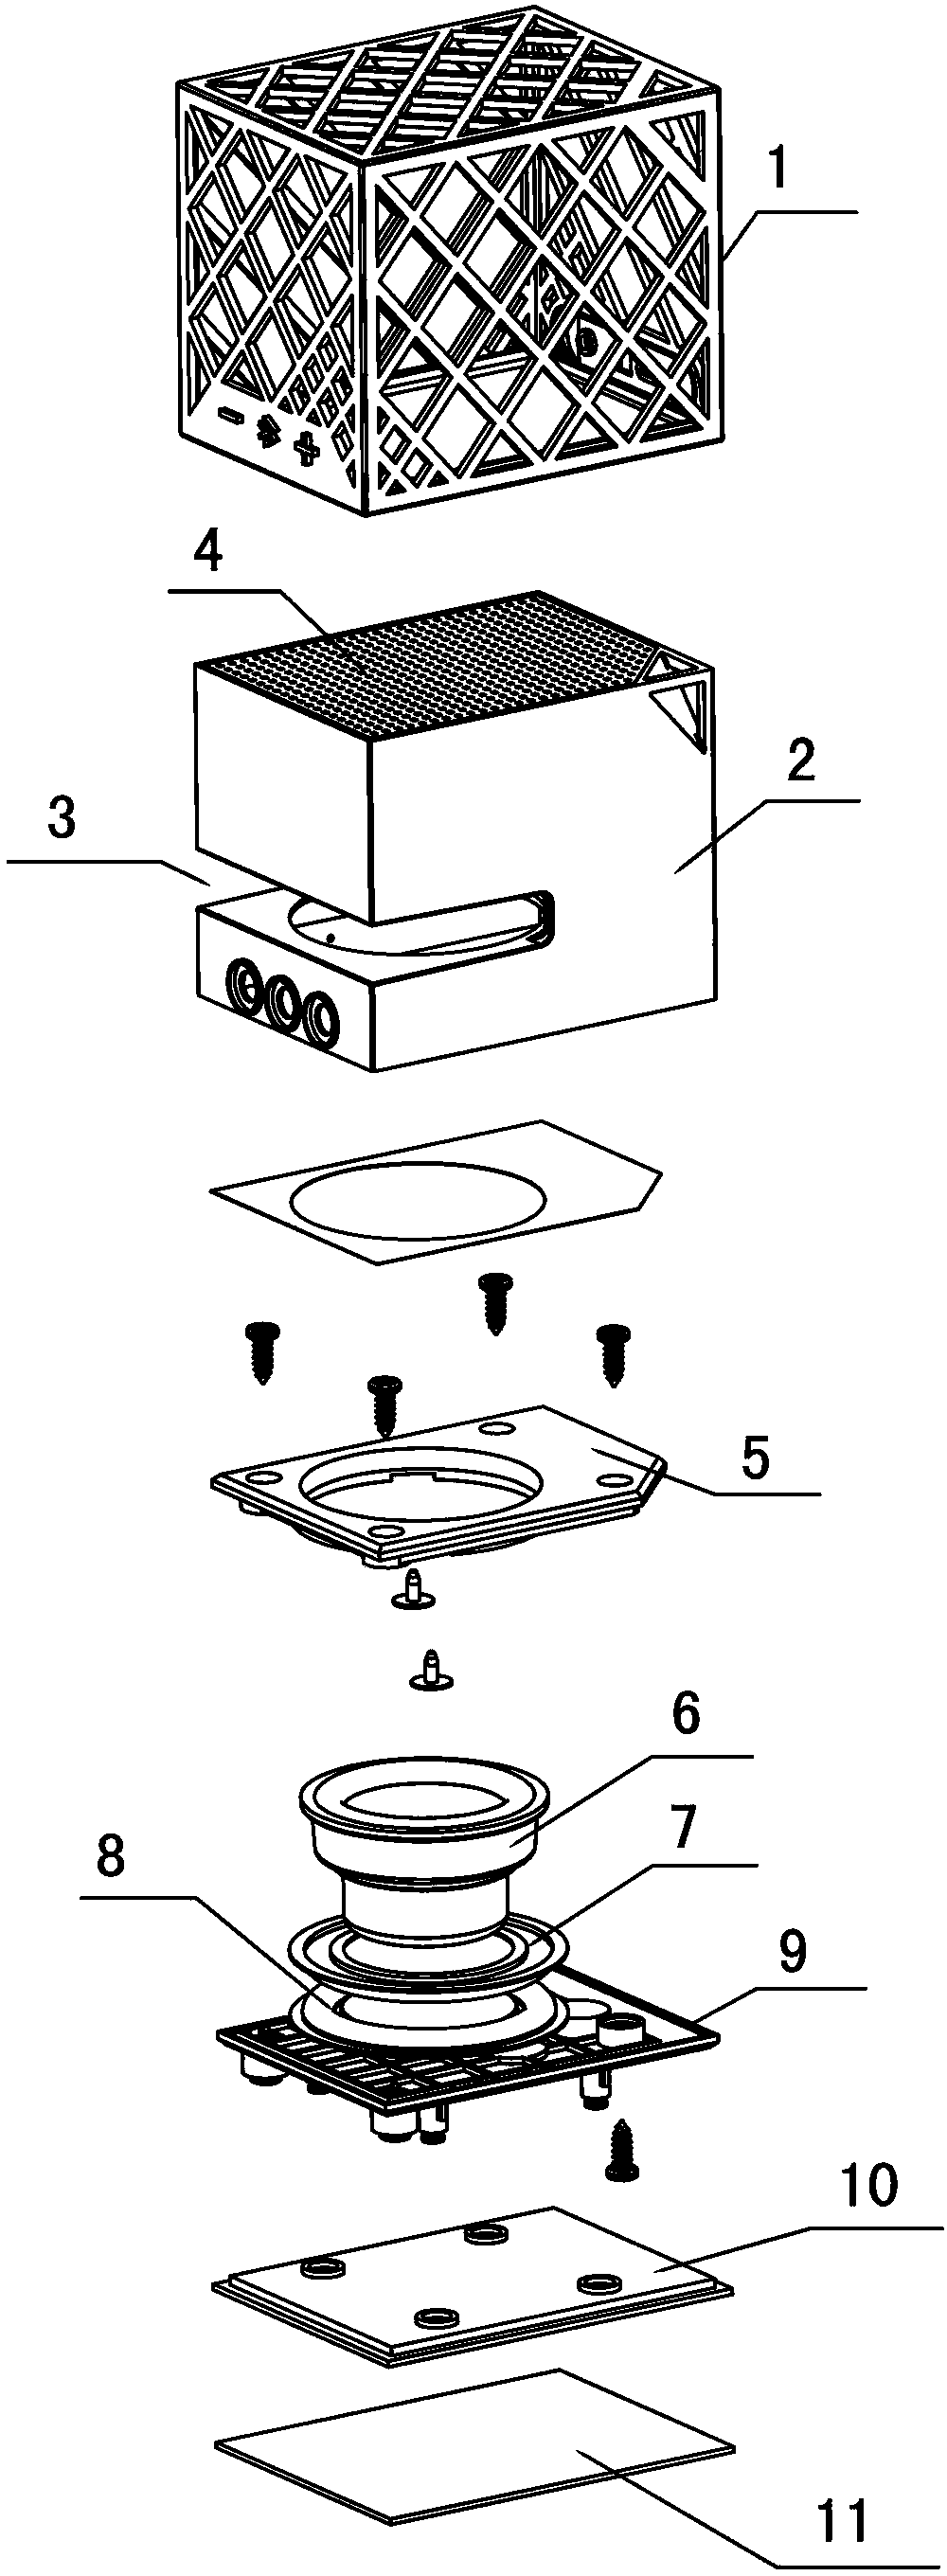 Double-vibrating-diaphragm loudspeaker box